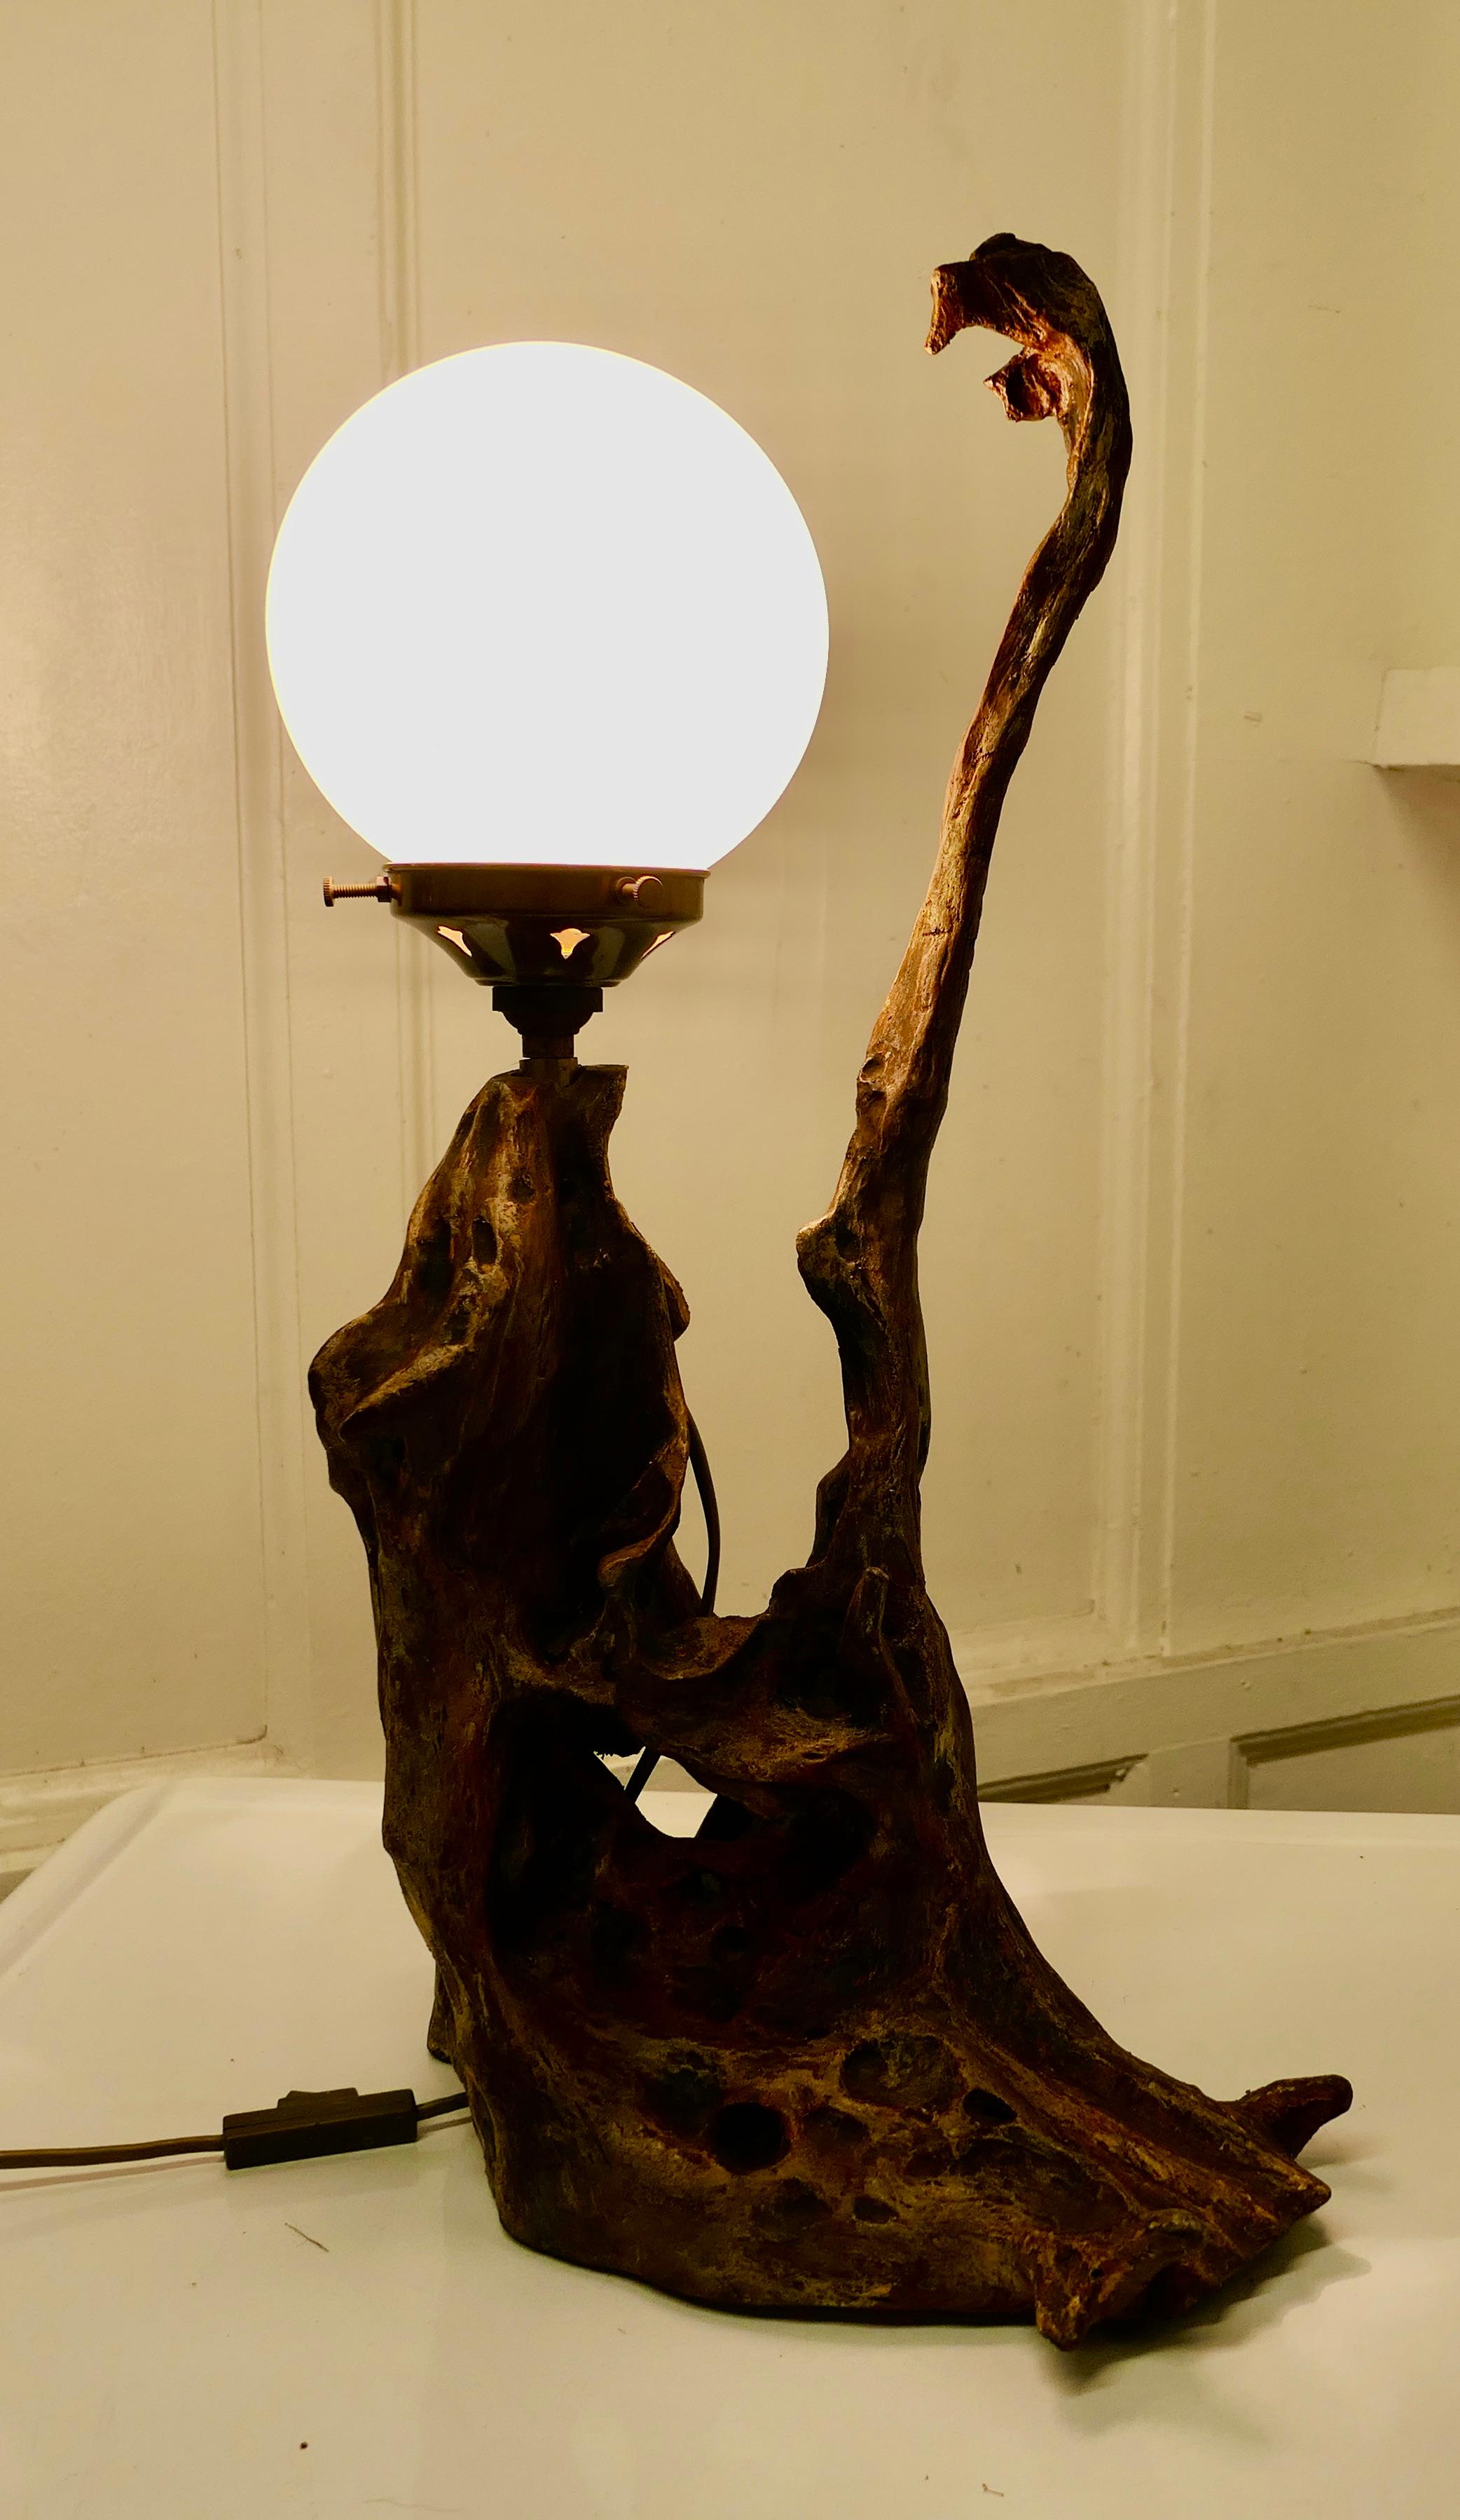 Lampe de table sculptée de style Folk Art.

Il s'agit d'une pièce très attrayante et quelque peu inhabituelle, une ancienne sculpture de racine qui a été adaptée pour la transformer en une charmante lampe de table, la lampe est différente de